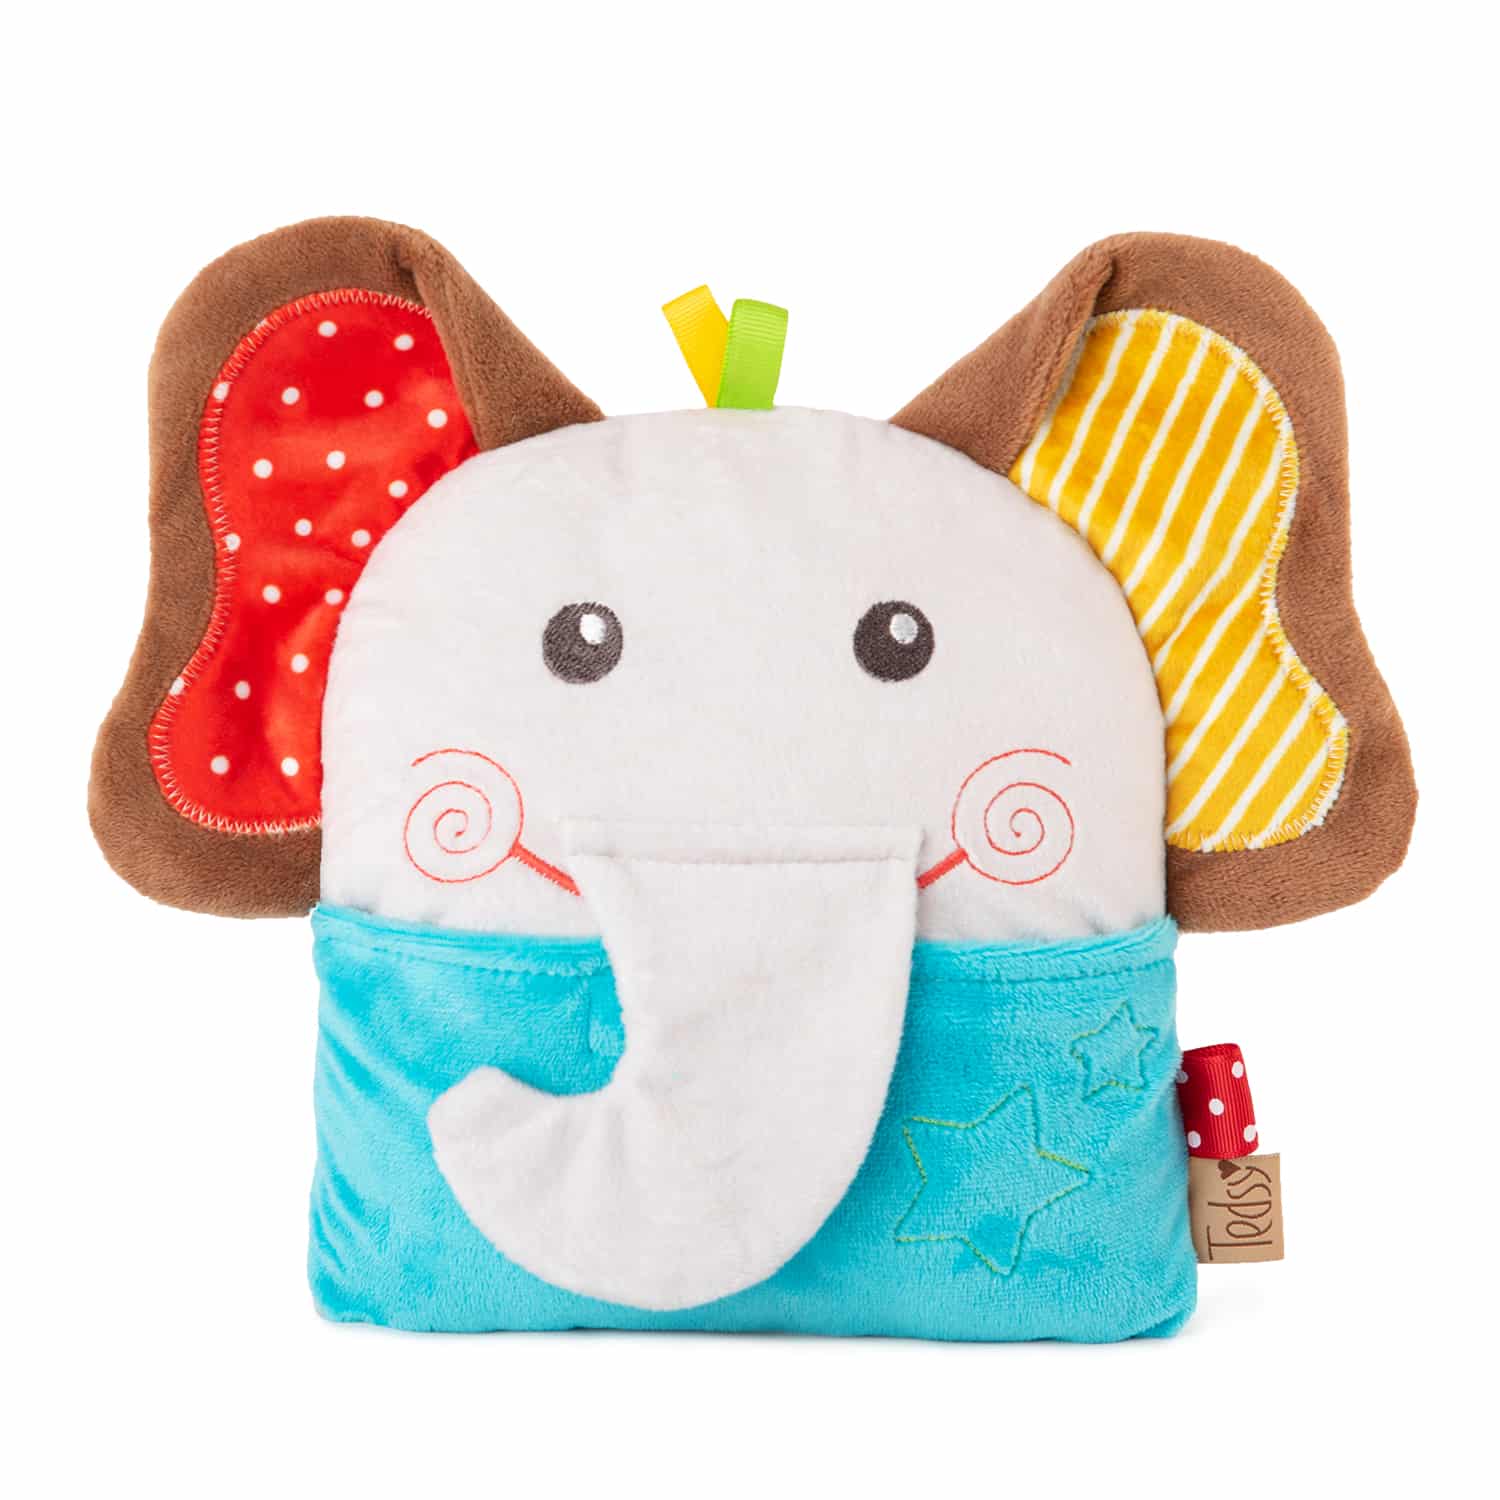 Baby plush toy with cherry stones Elephant